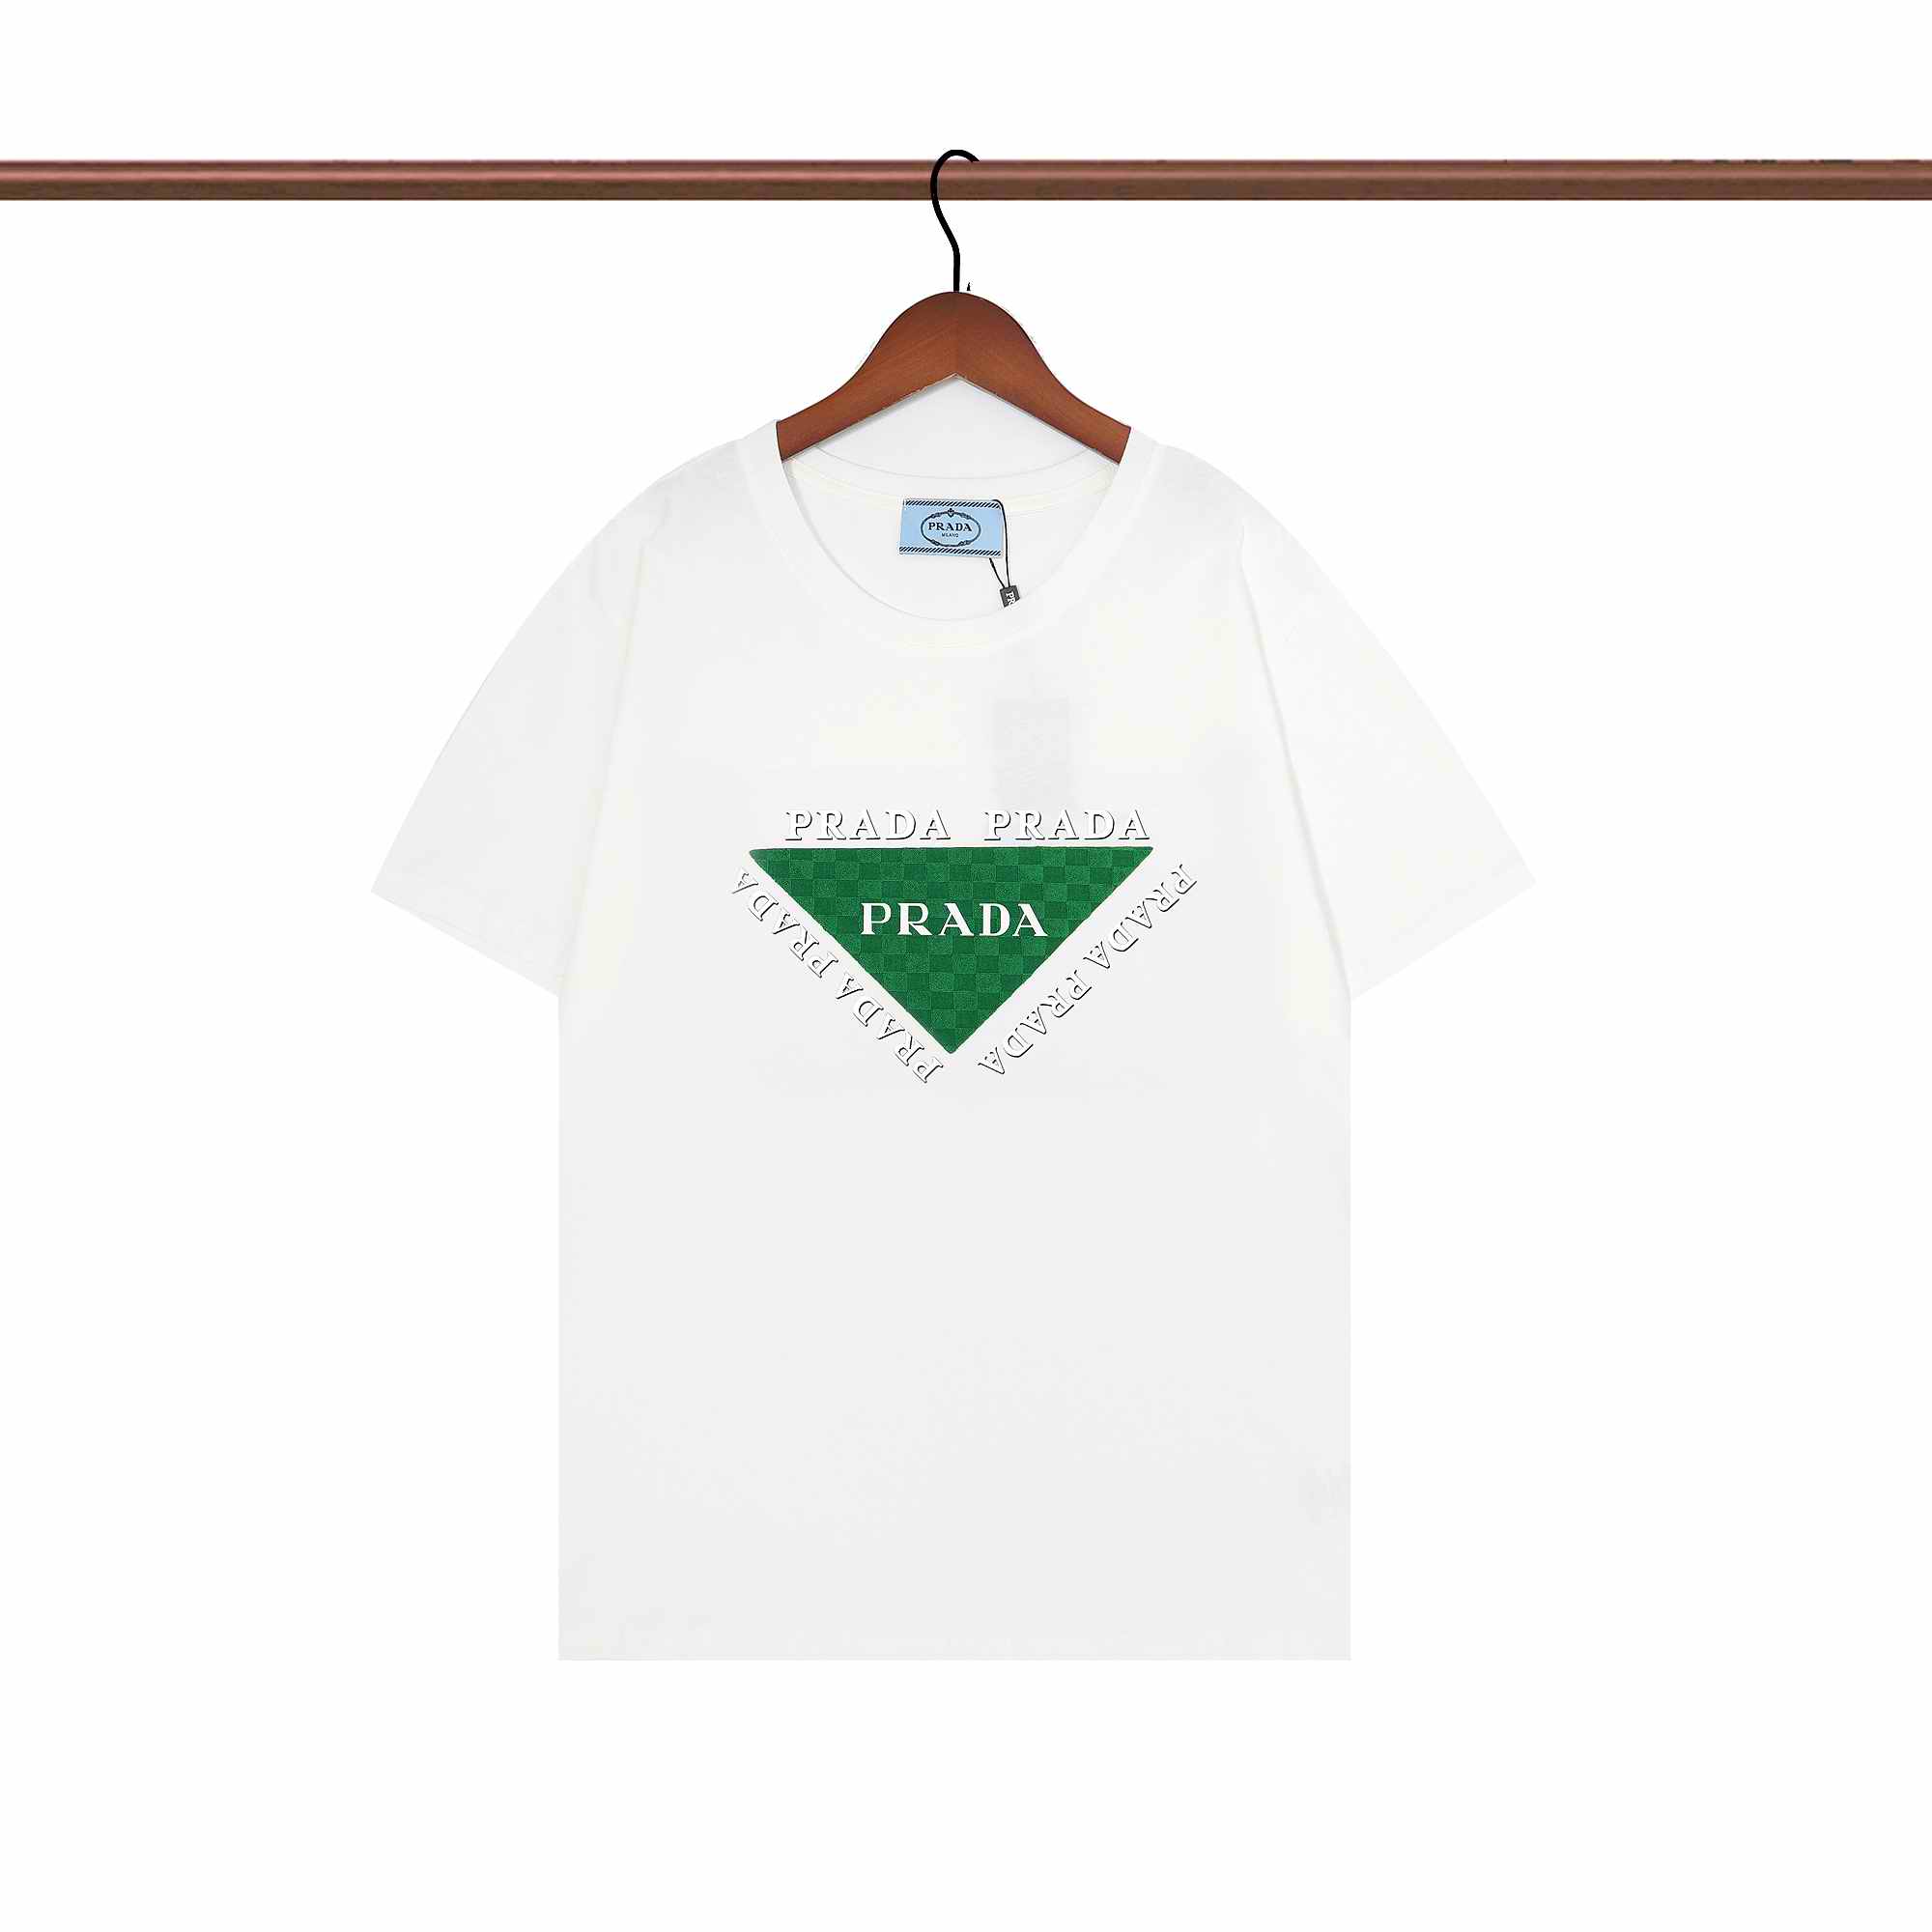  Prada Shirts 008